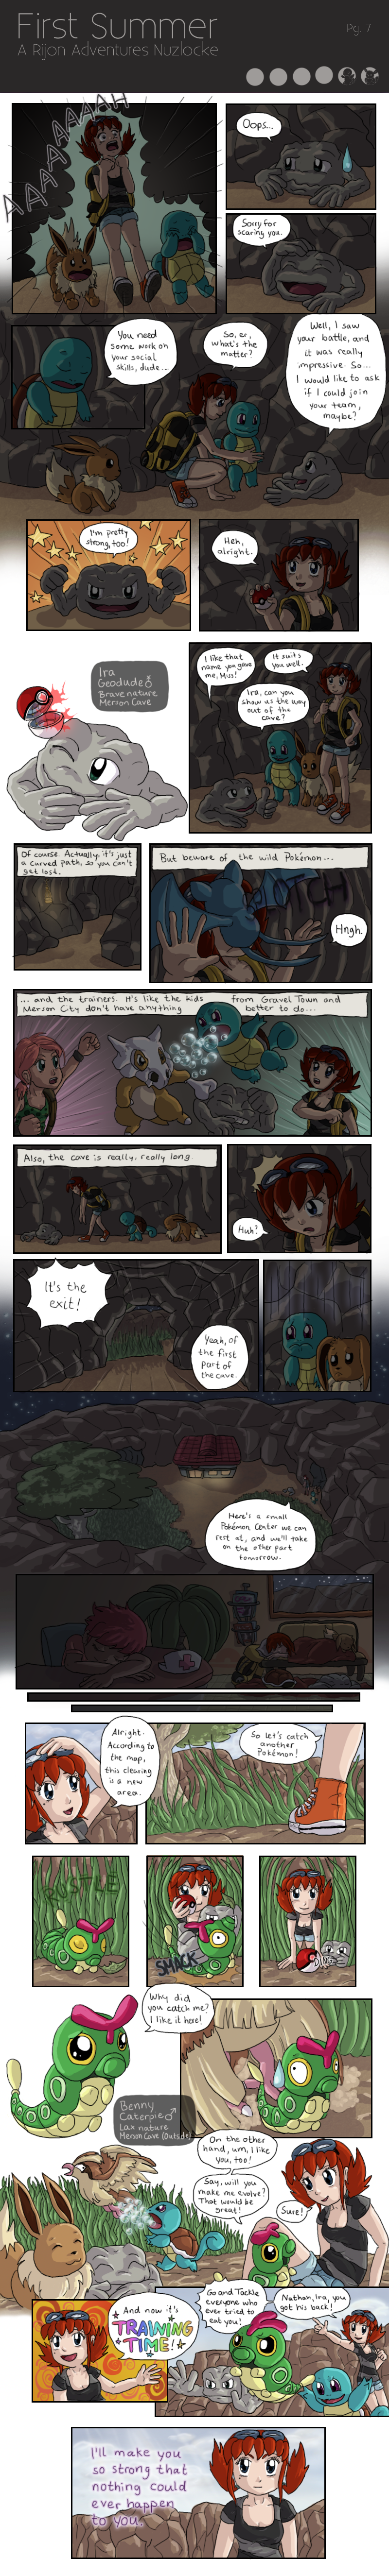 First Summer - A Rijon Adventures Nuzlocke [Pg. 7]